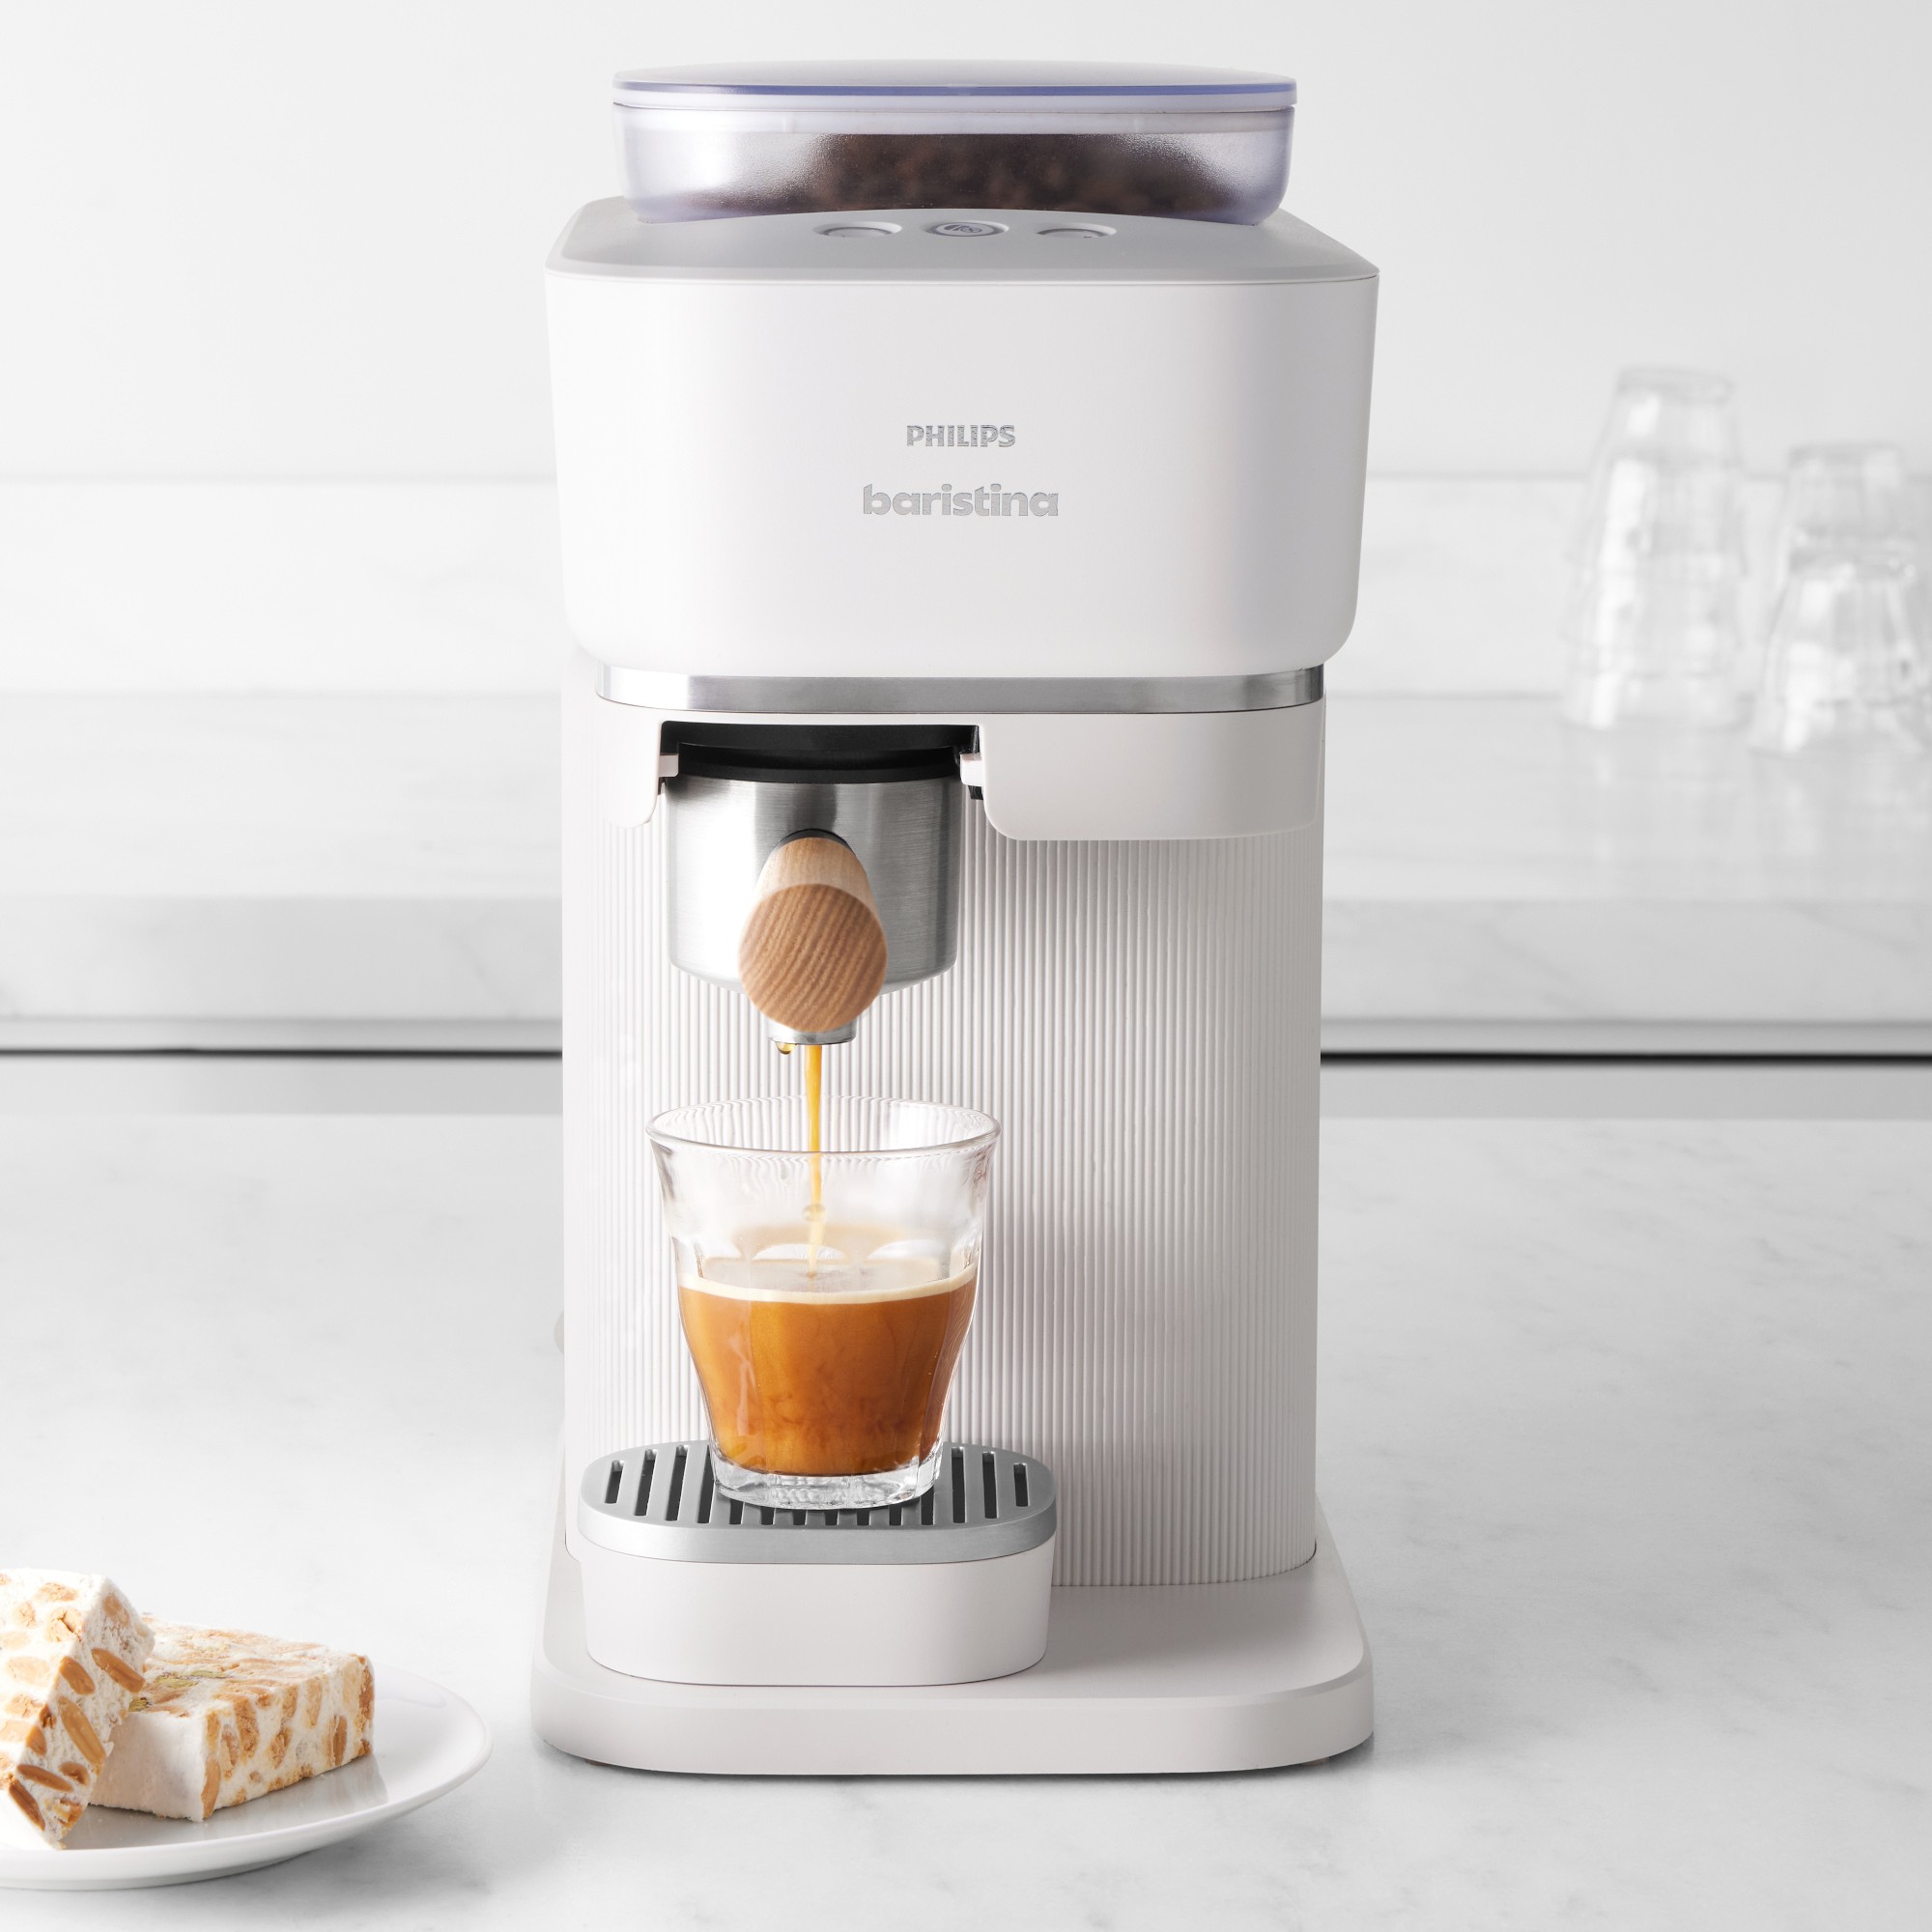 Philips Baristina Premium Espresso Machine